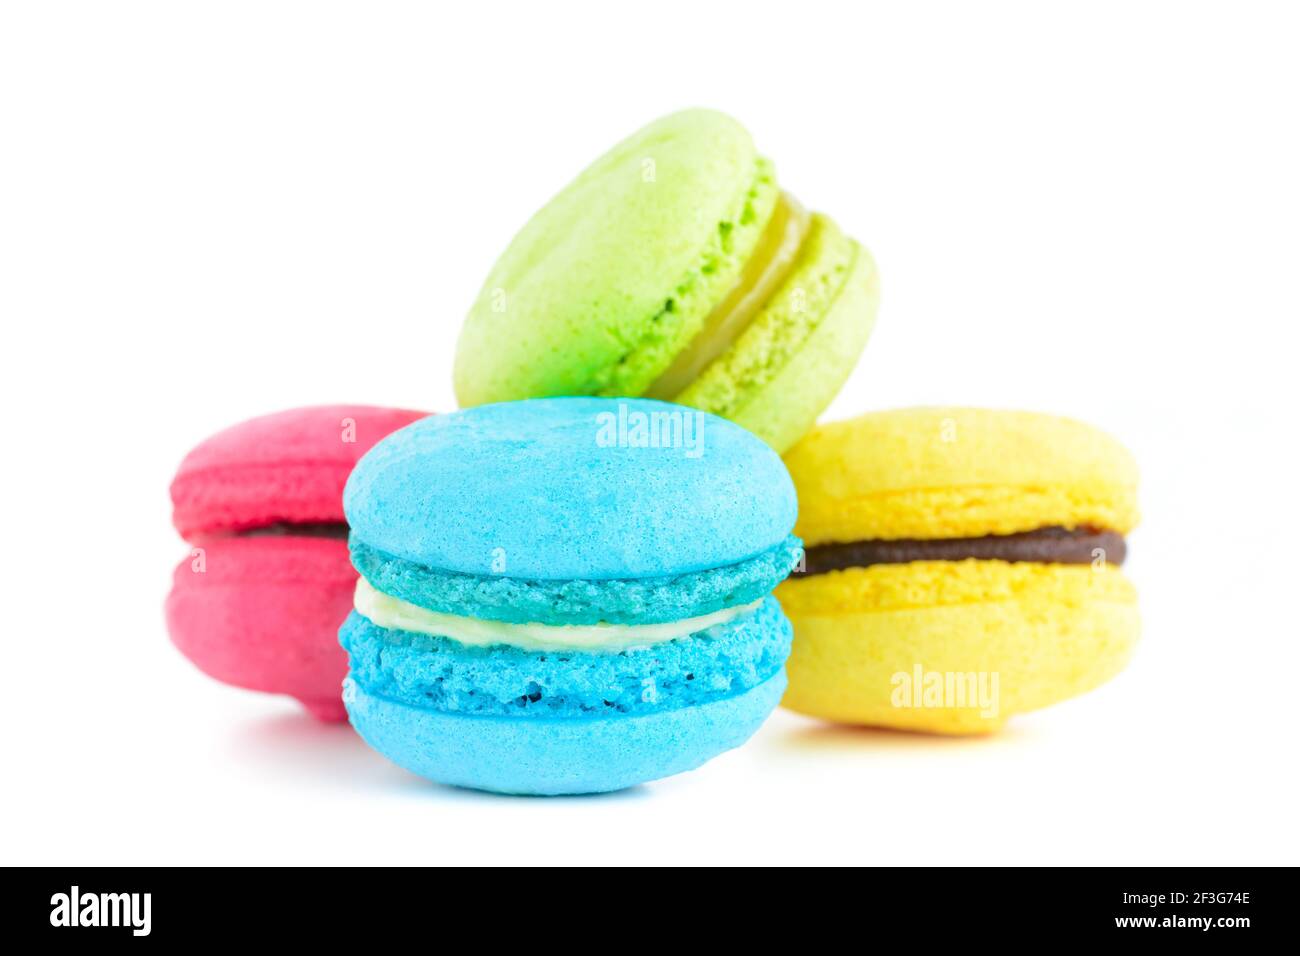 Macaron colorati, dolce francese, isolati su sfondo bianco Foto Stock